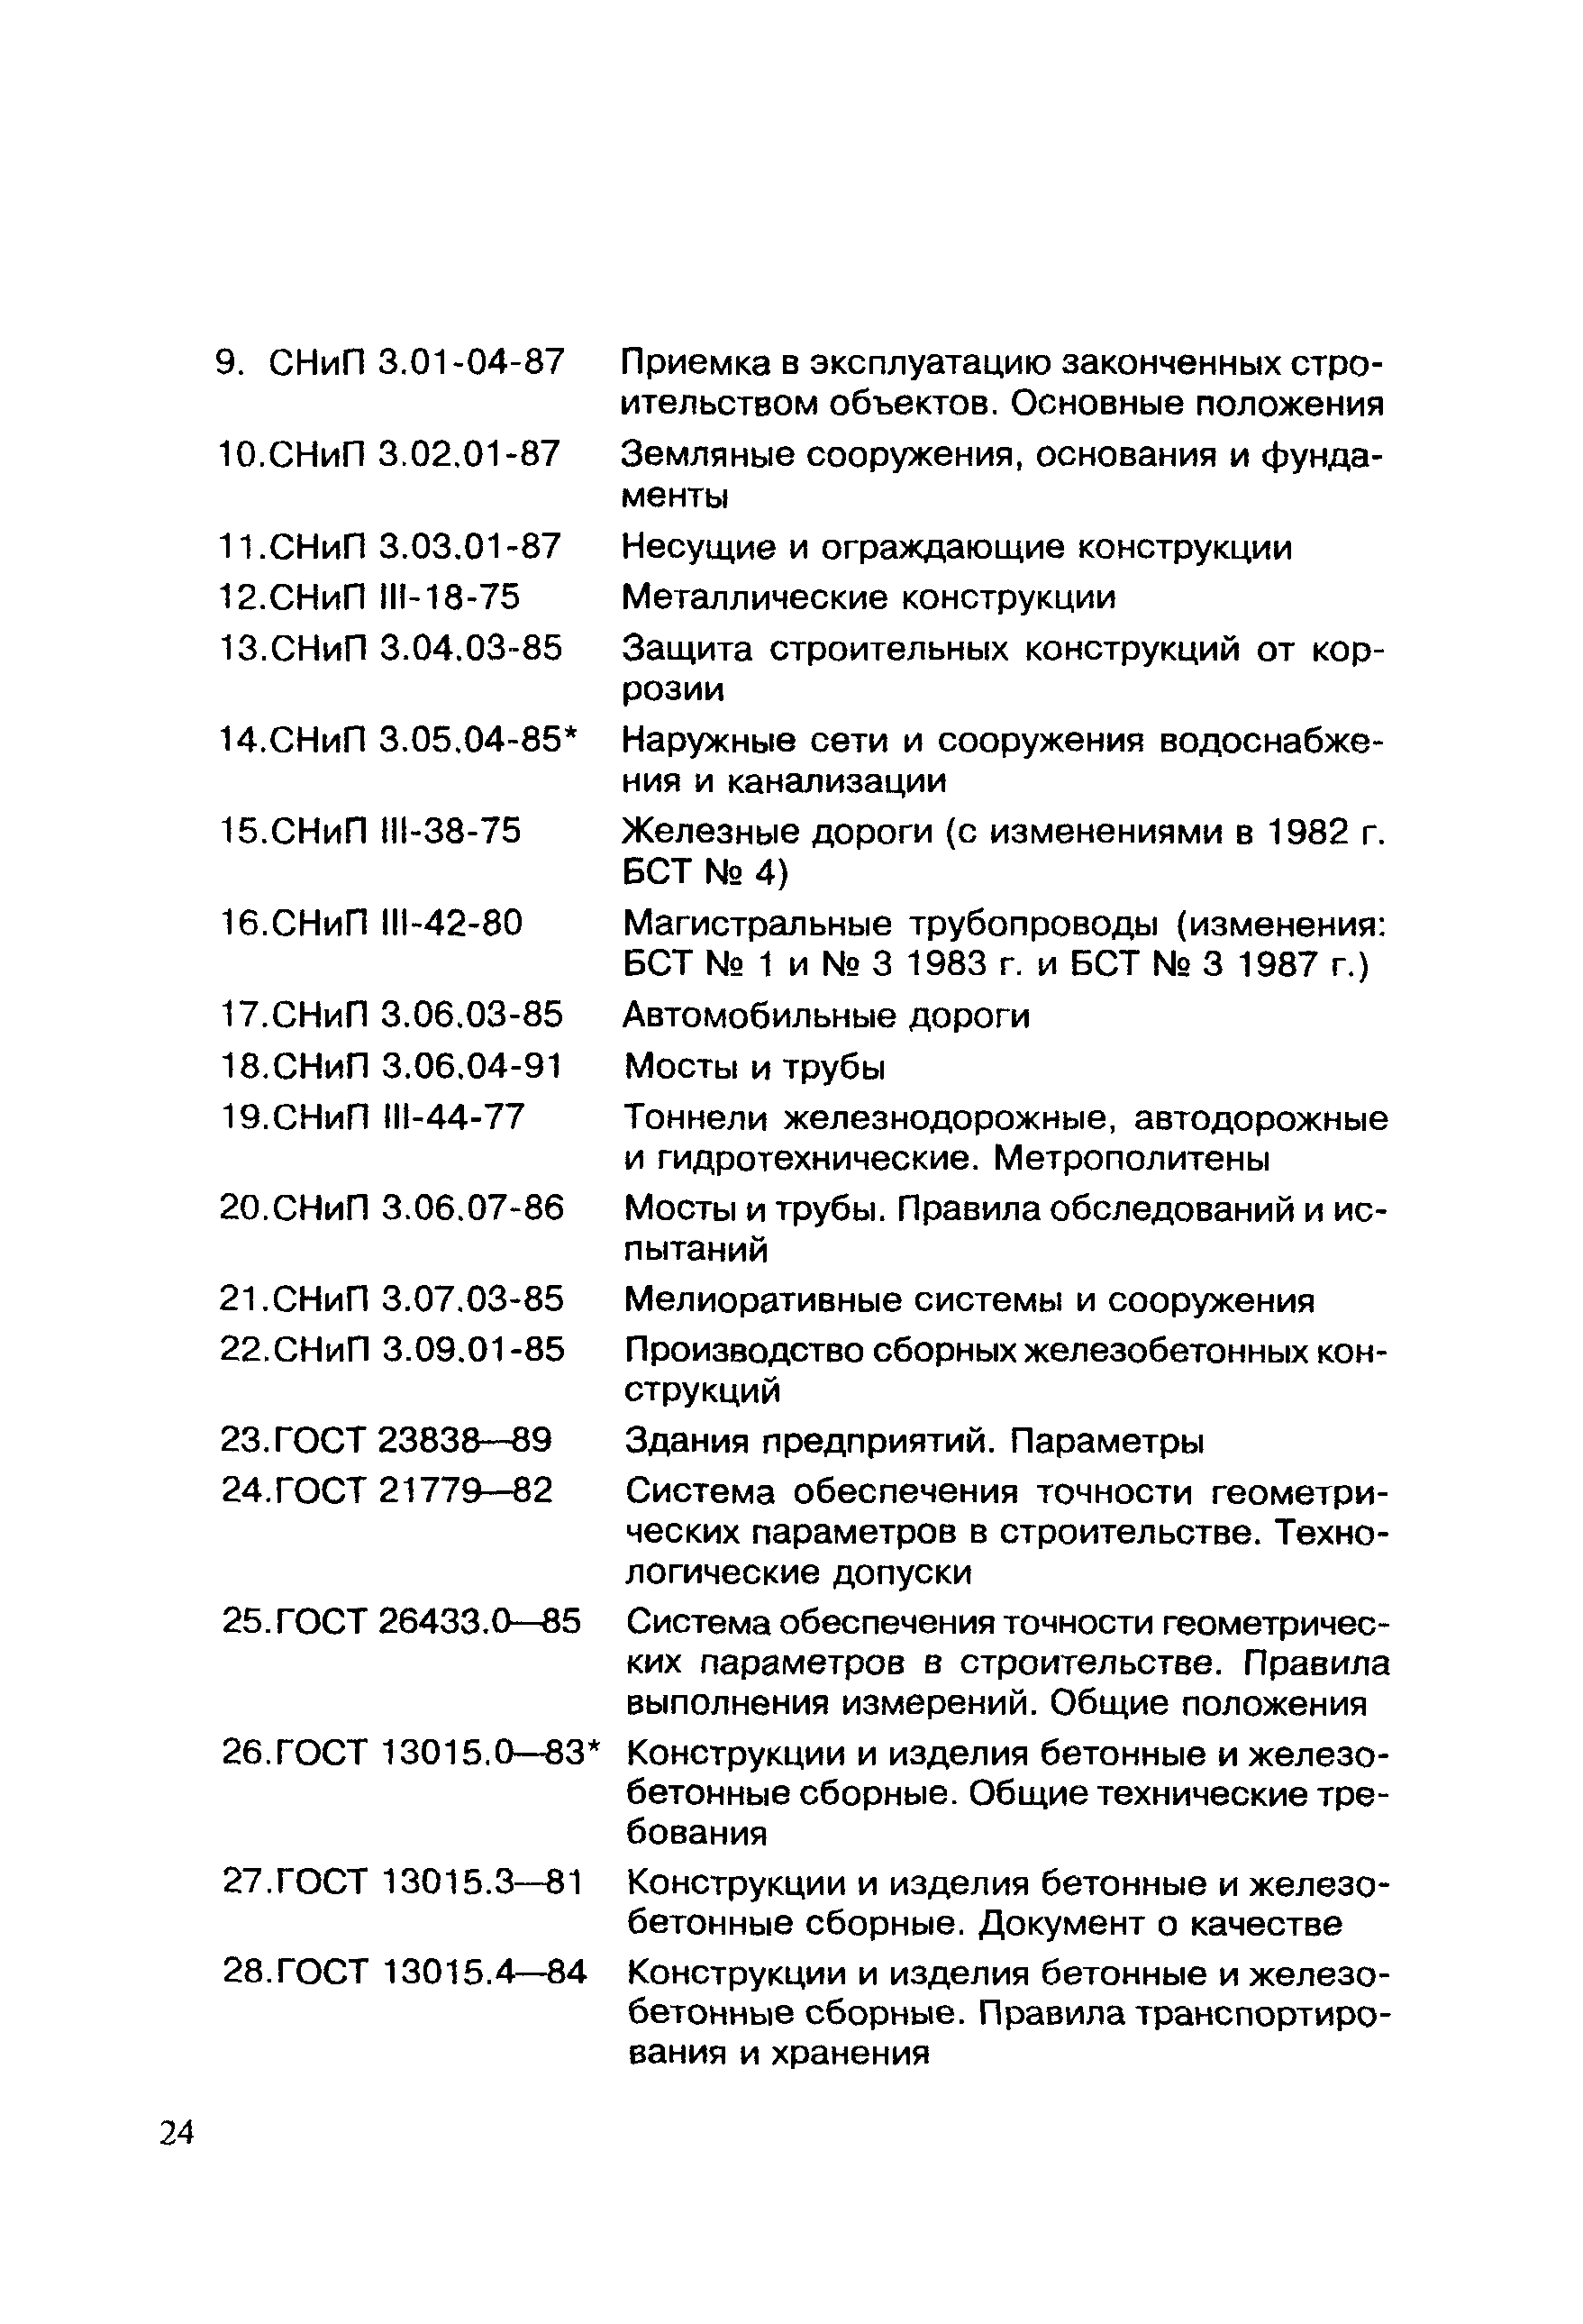 МДС 12-7.2000